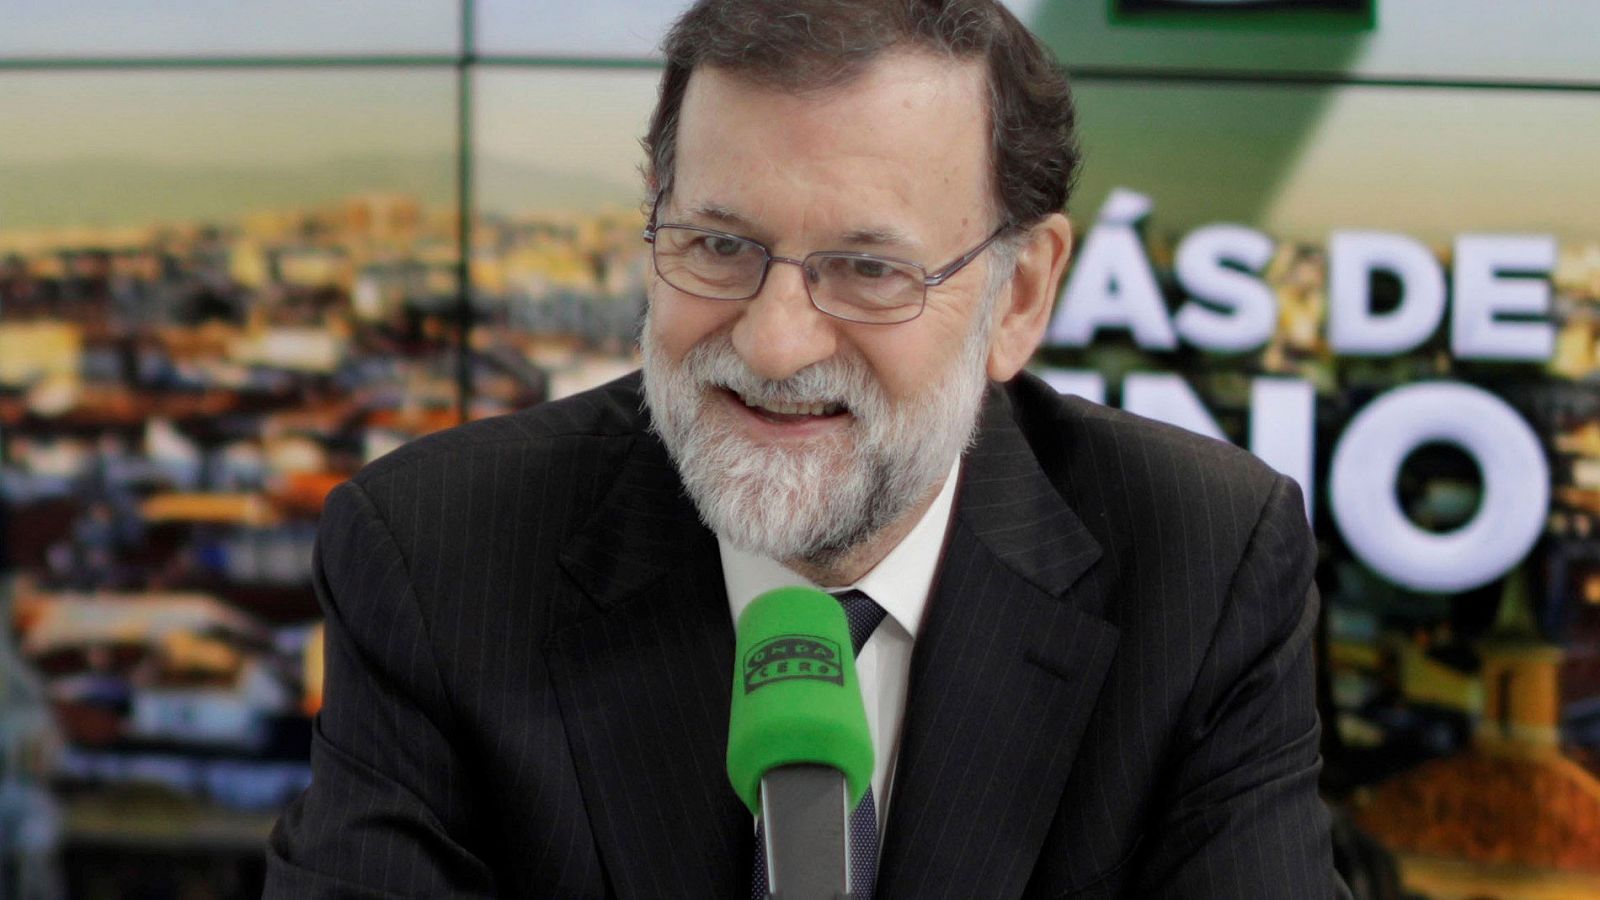 Cataluña | Rajoy recurrirá al Constitucional si Puigdemont es investido a distancia